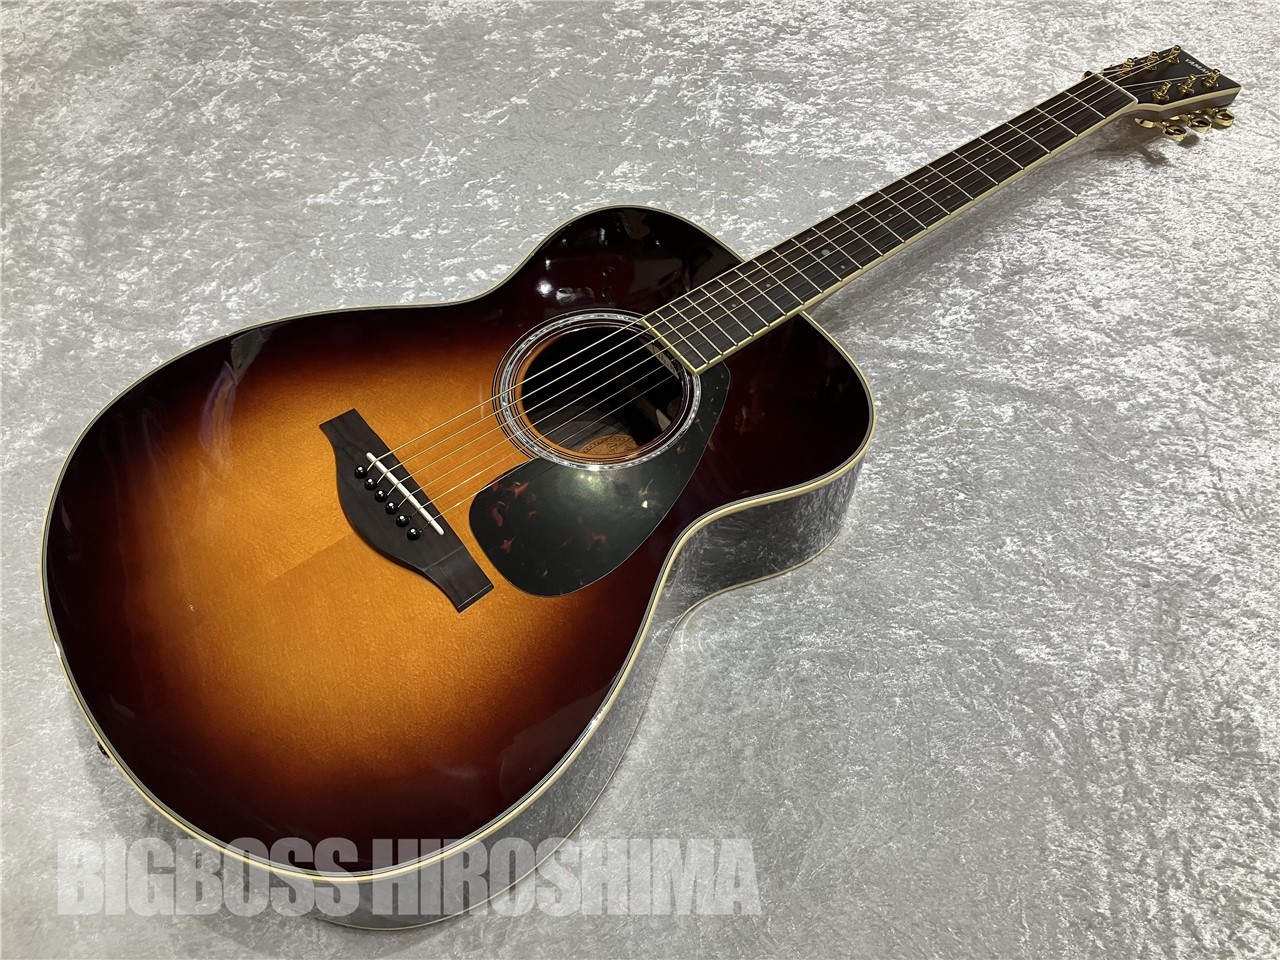 【即納可能】YAMAHA(ヤマハ) LS6 ARE Brown Sunburst (アコースティックギター) 広島店